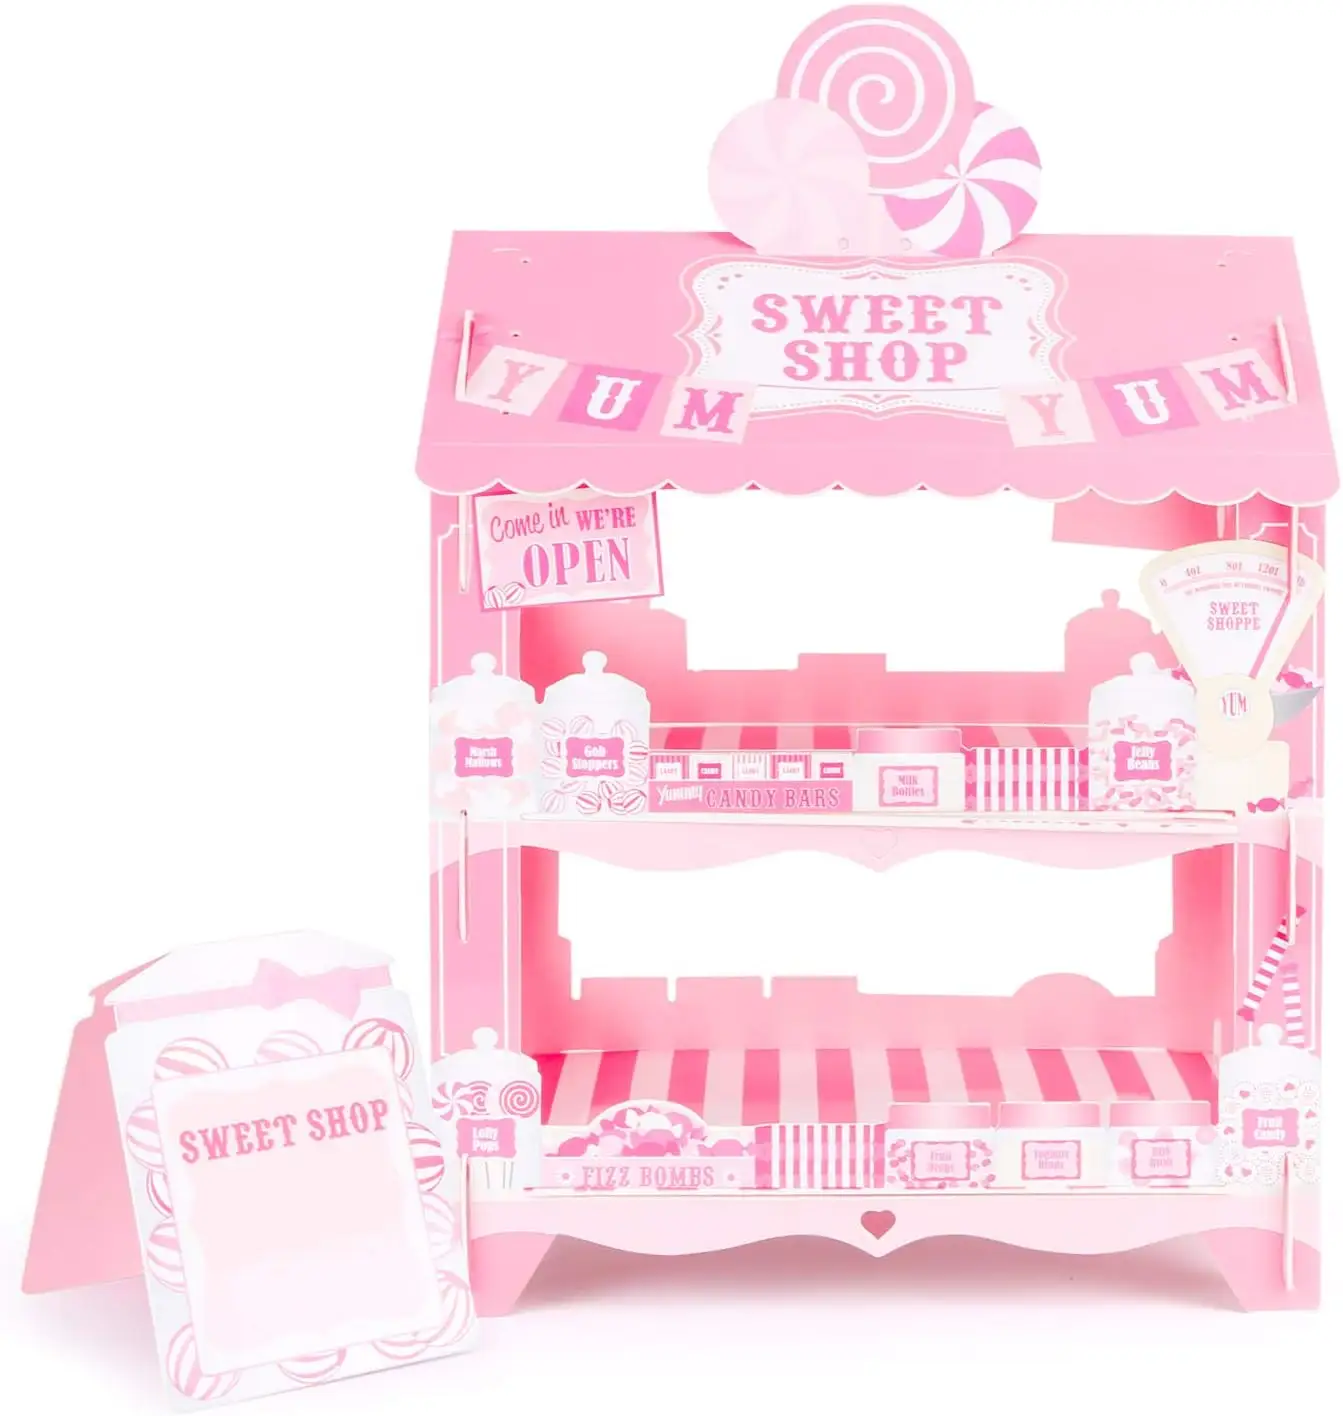 Sweet Shop House Rosa Cupcake Stand Candy Cart Kuchen halter Lollipop Display steht für Geburtstag Hochzeiten Party Dekorationen